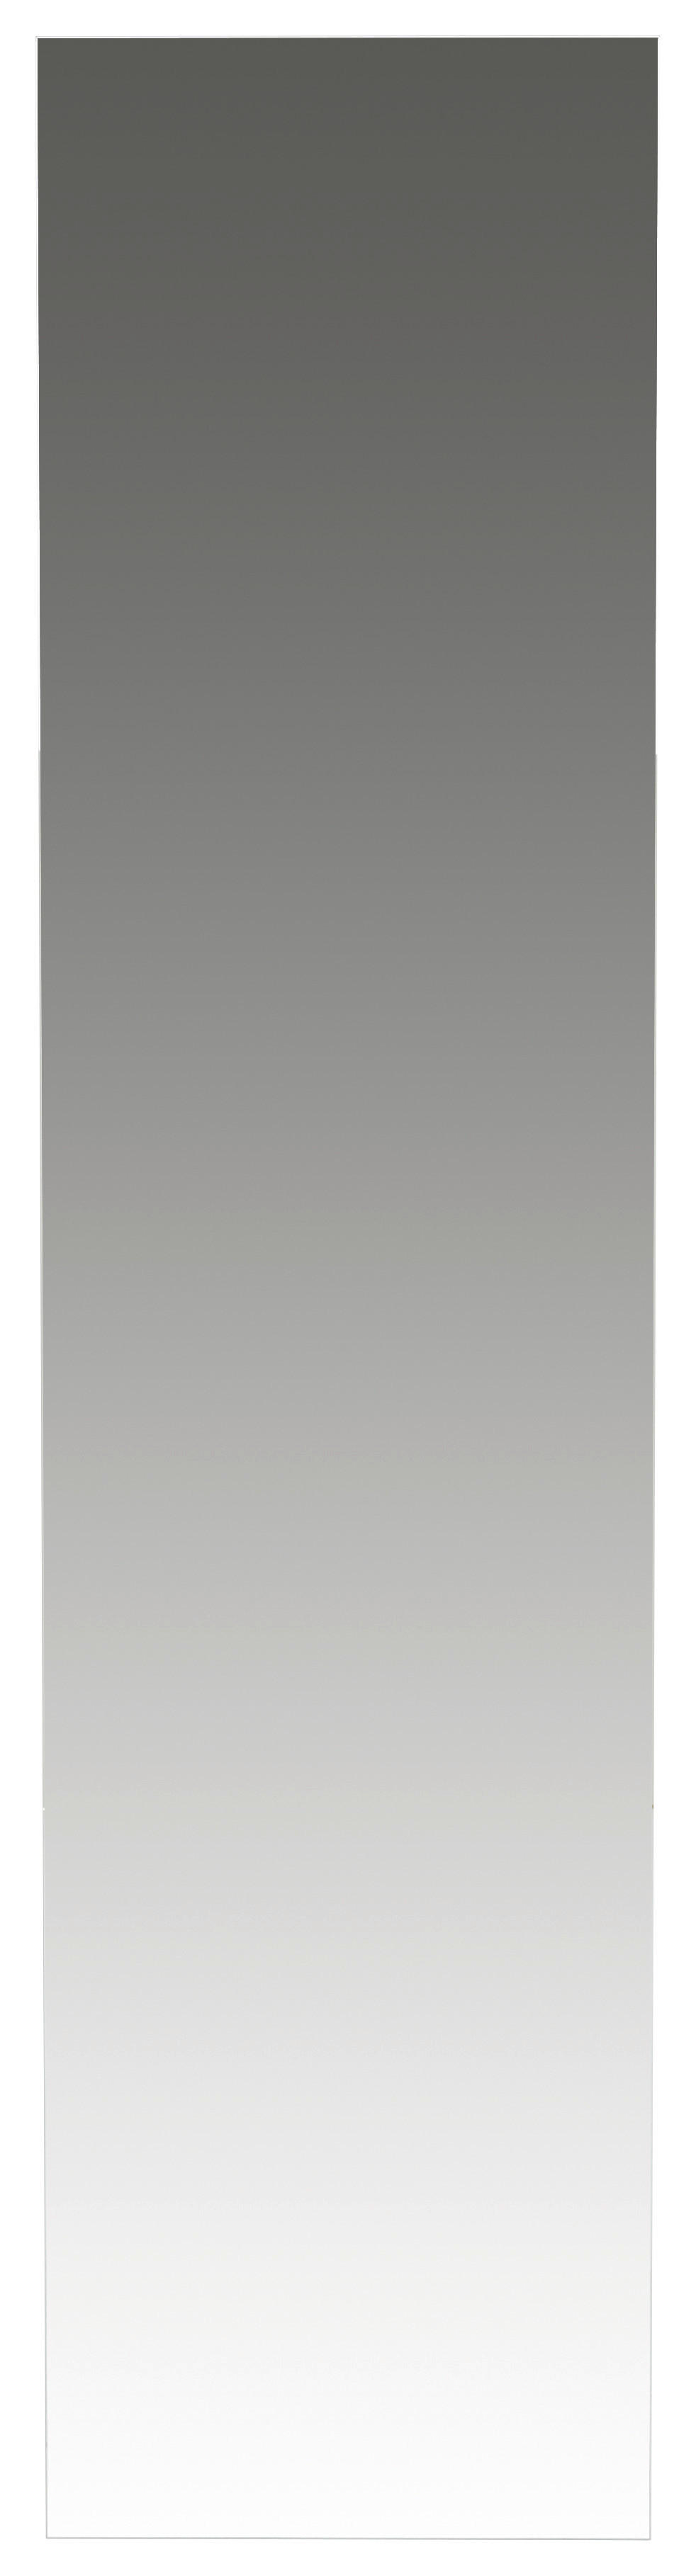 WANDSPIEGEL 42/170/3 cm    - Weiß, Design, Holzwerkstoff (42/170/3cm) - Livetastic